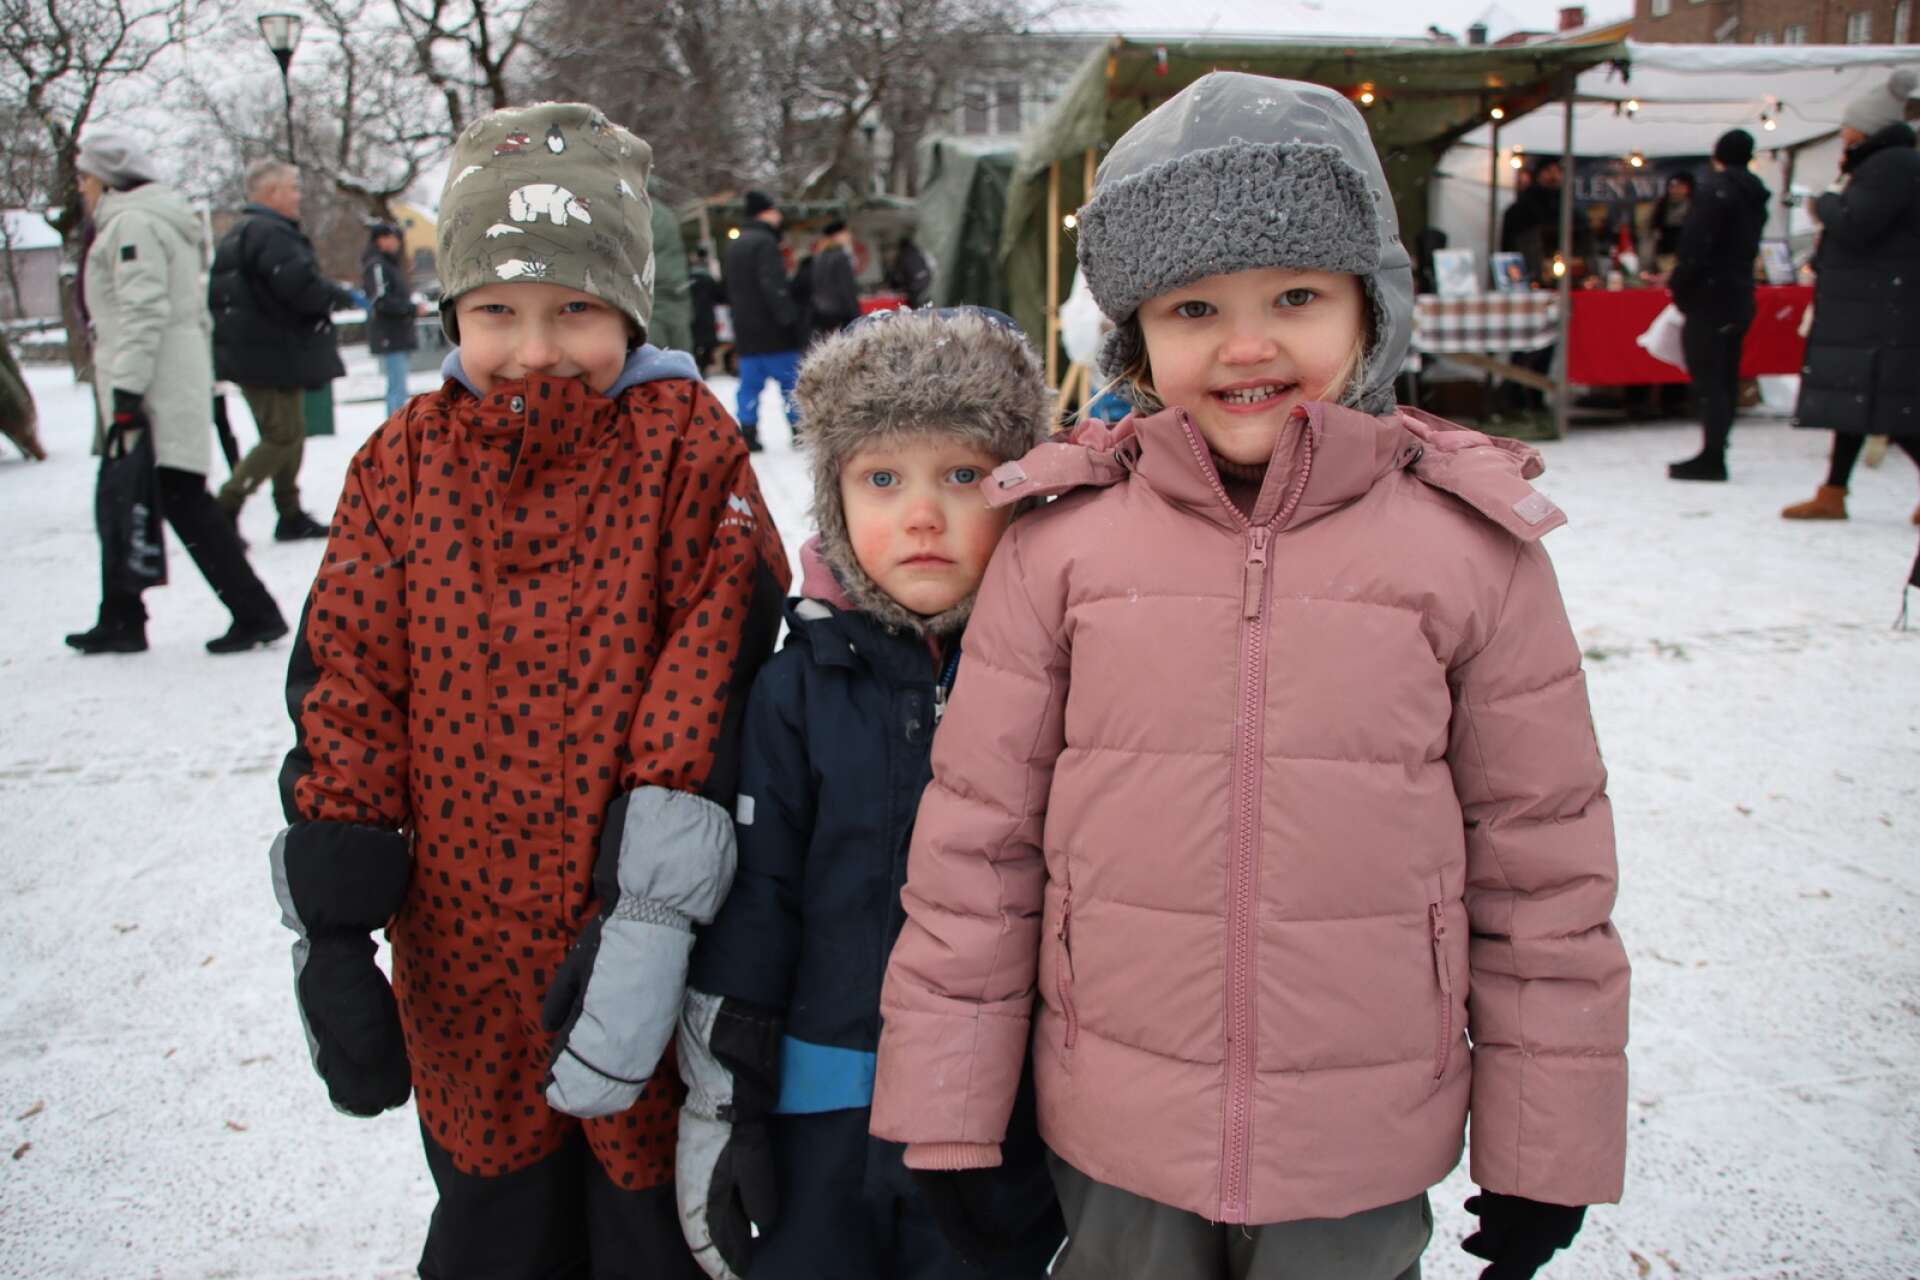 Filipstads julmarknad blev en fest för hela familjen. Det såldes juldekorationer, lotter och hembakat, bland annat. Marknaden arrangerades av Filipstadsföretag i samverkan. Syskonen Ebbe Jakobsson (till vänster) och Flora Jakobsson besökte marknaden tillsammans med sin kusin Iris Lundqvist.